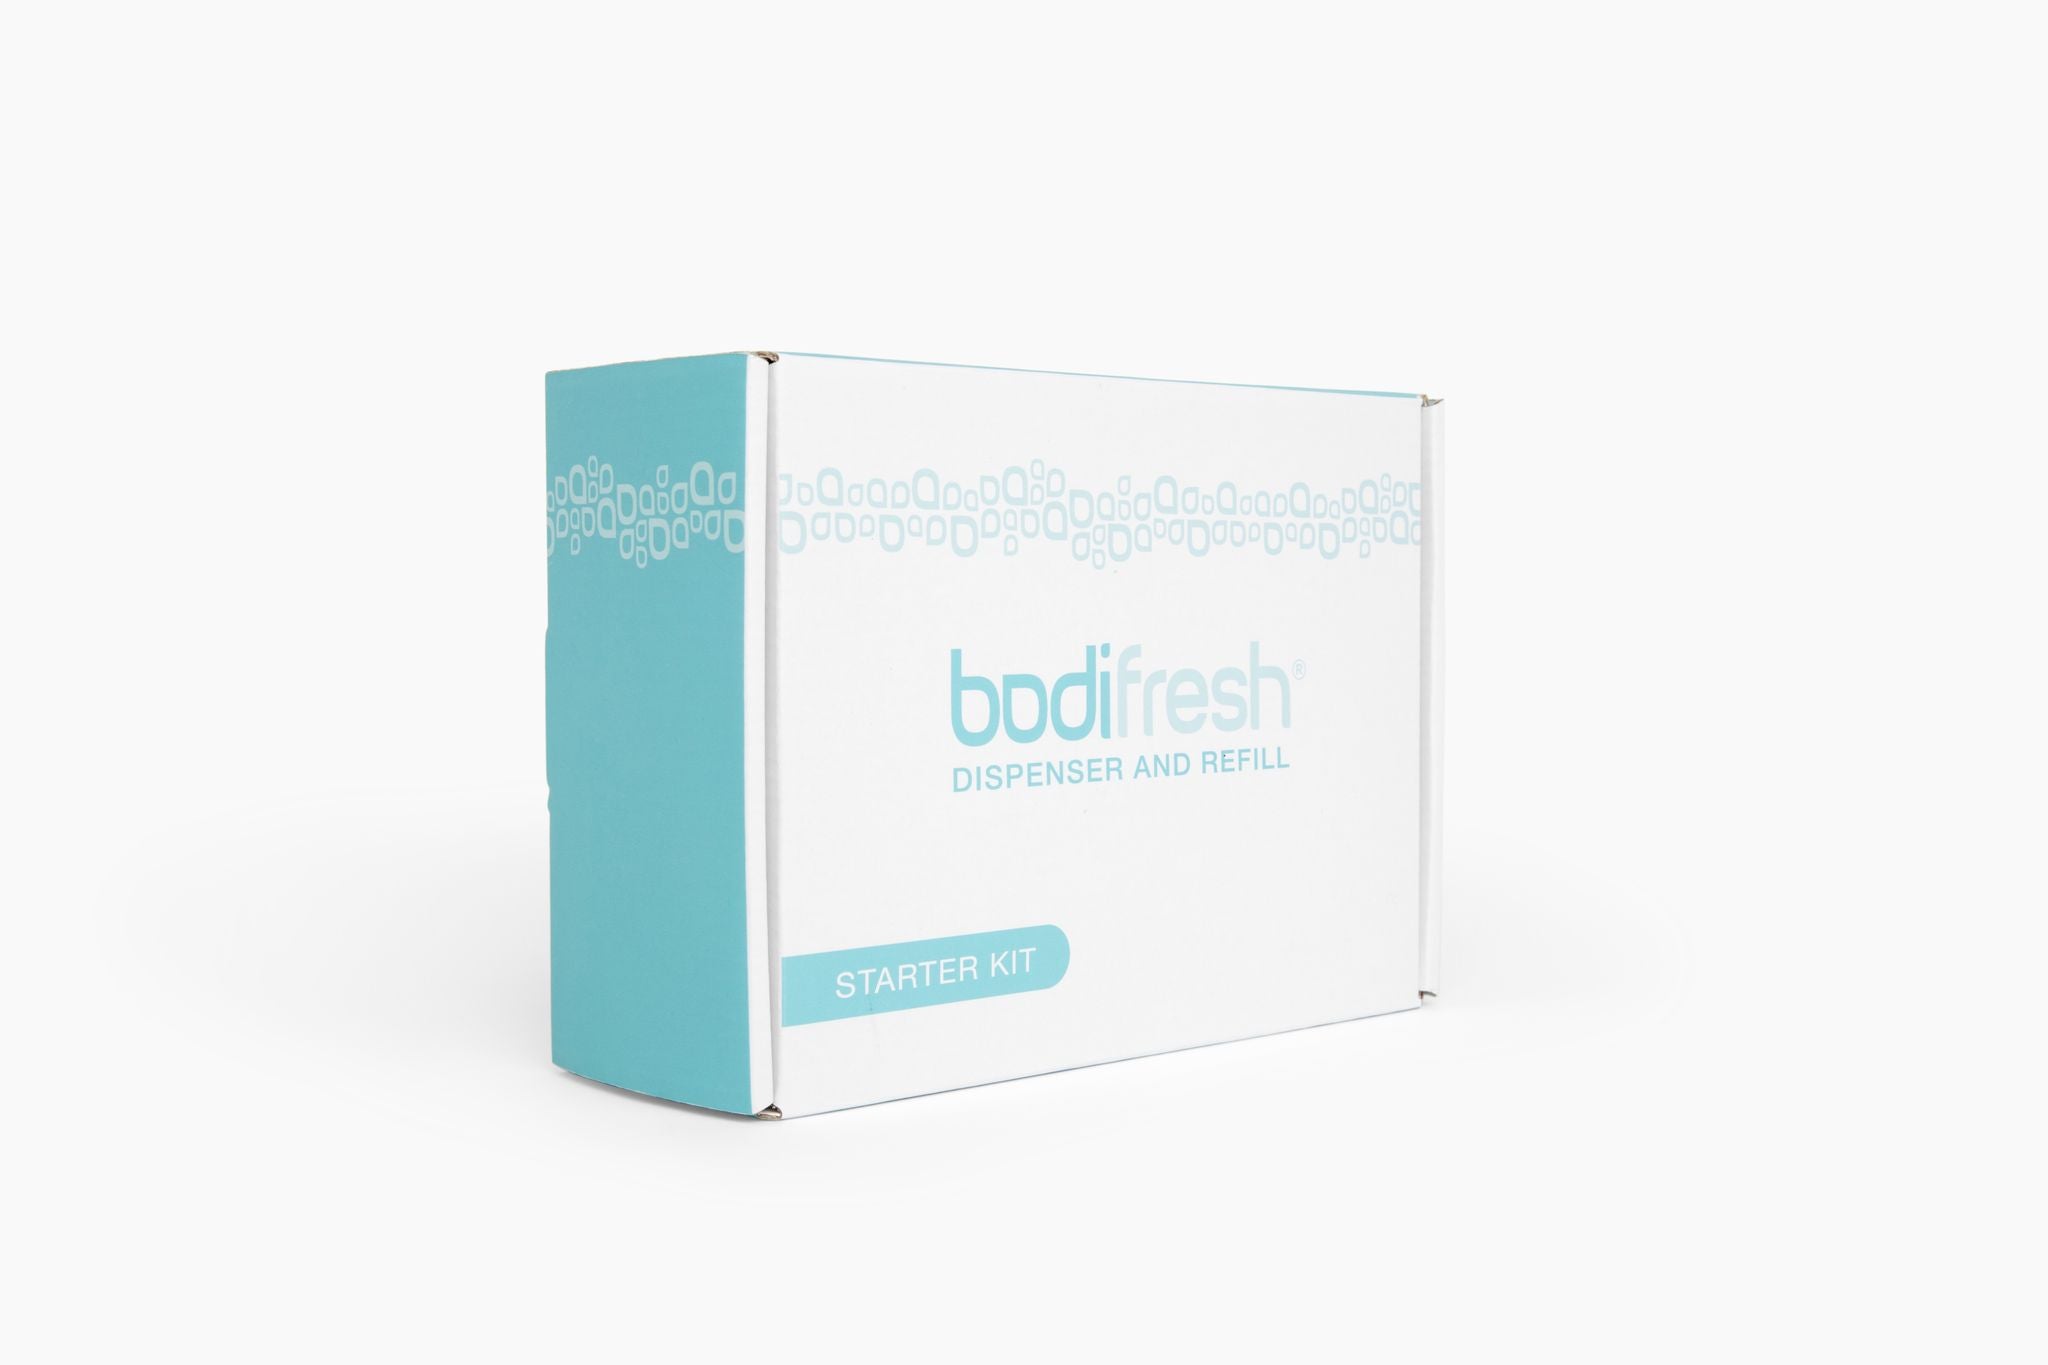 Bodifresh At Home Starter Kit